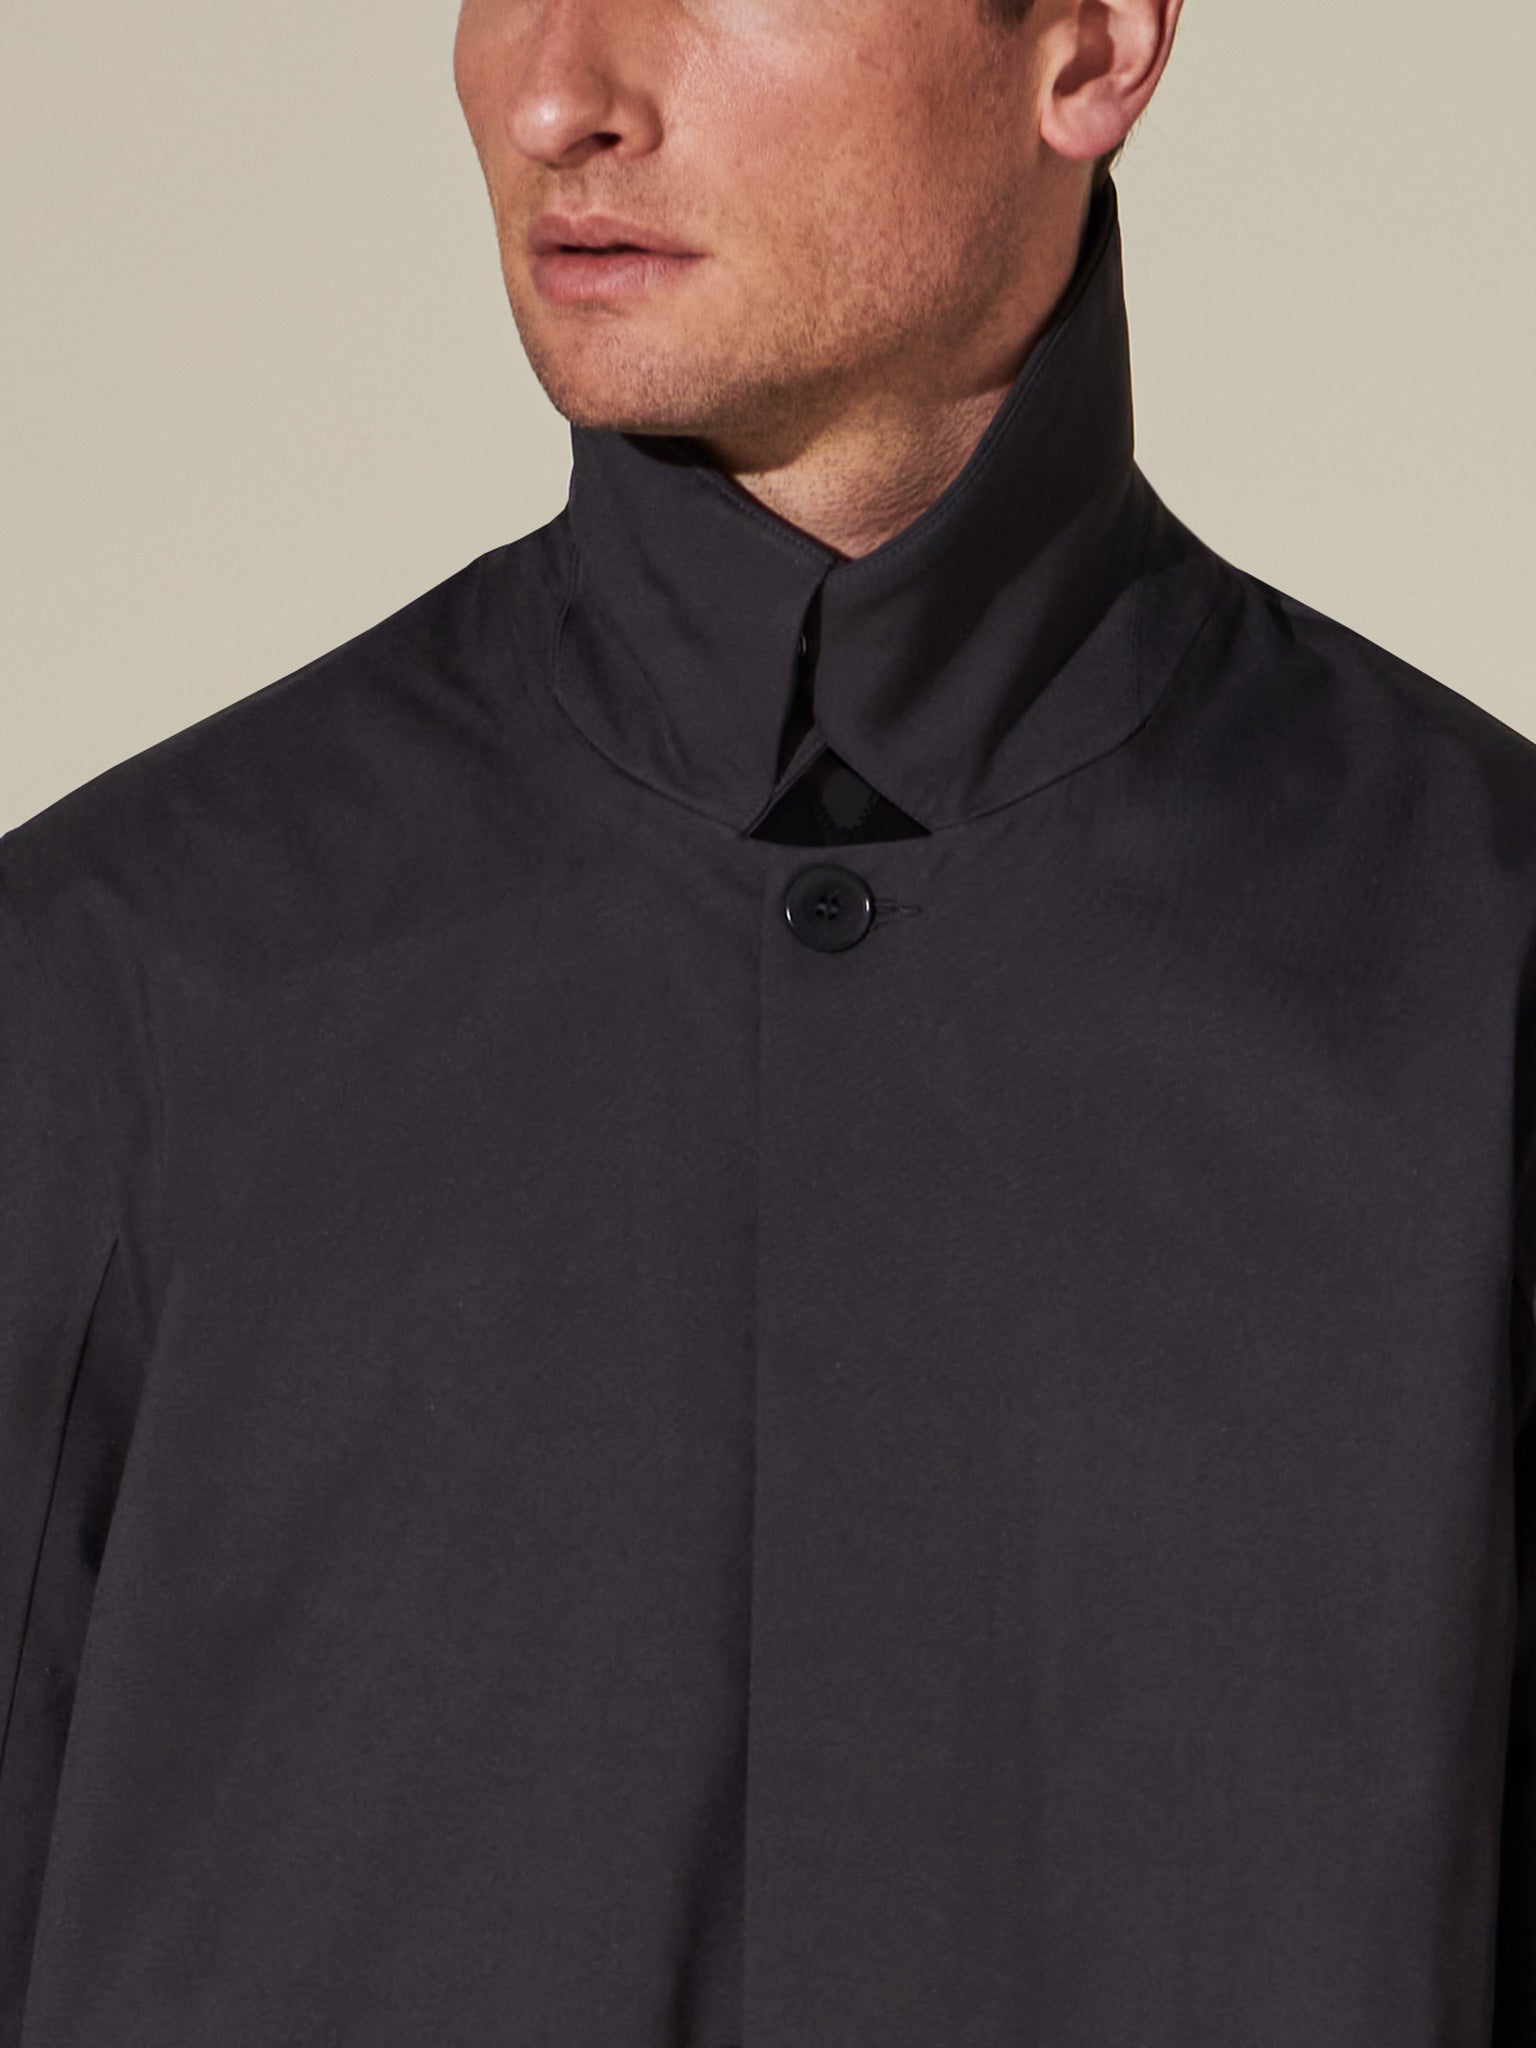 Obsidian Black waterproof trench coat for men